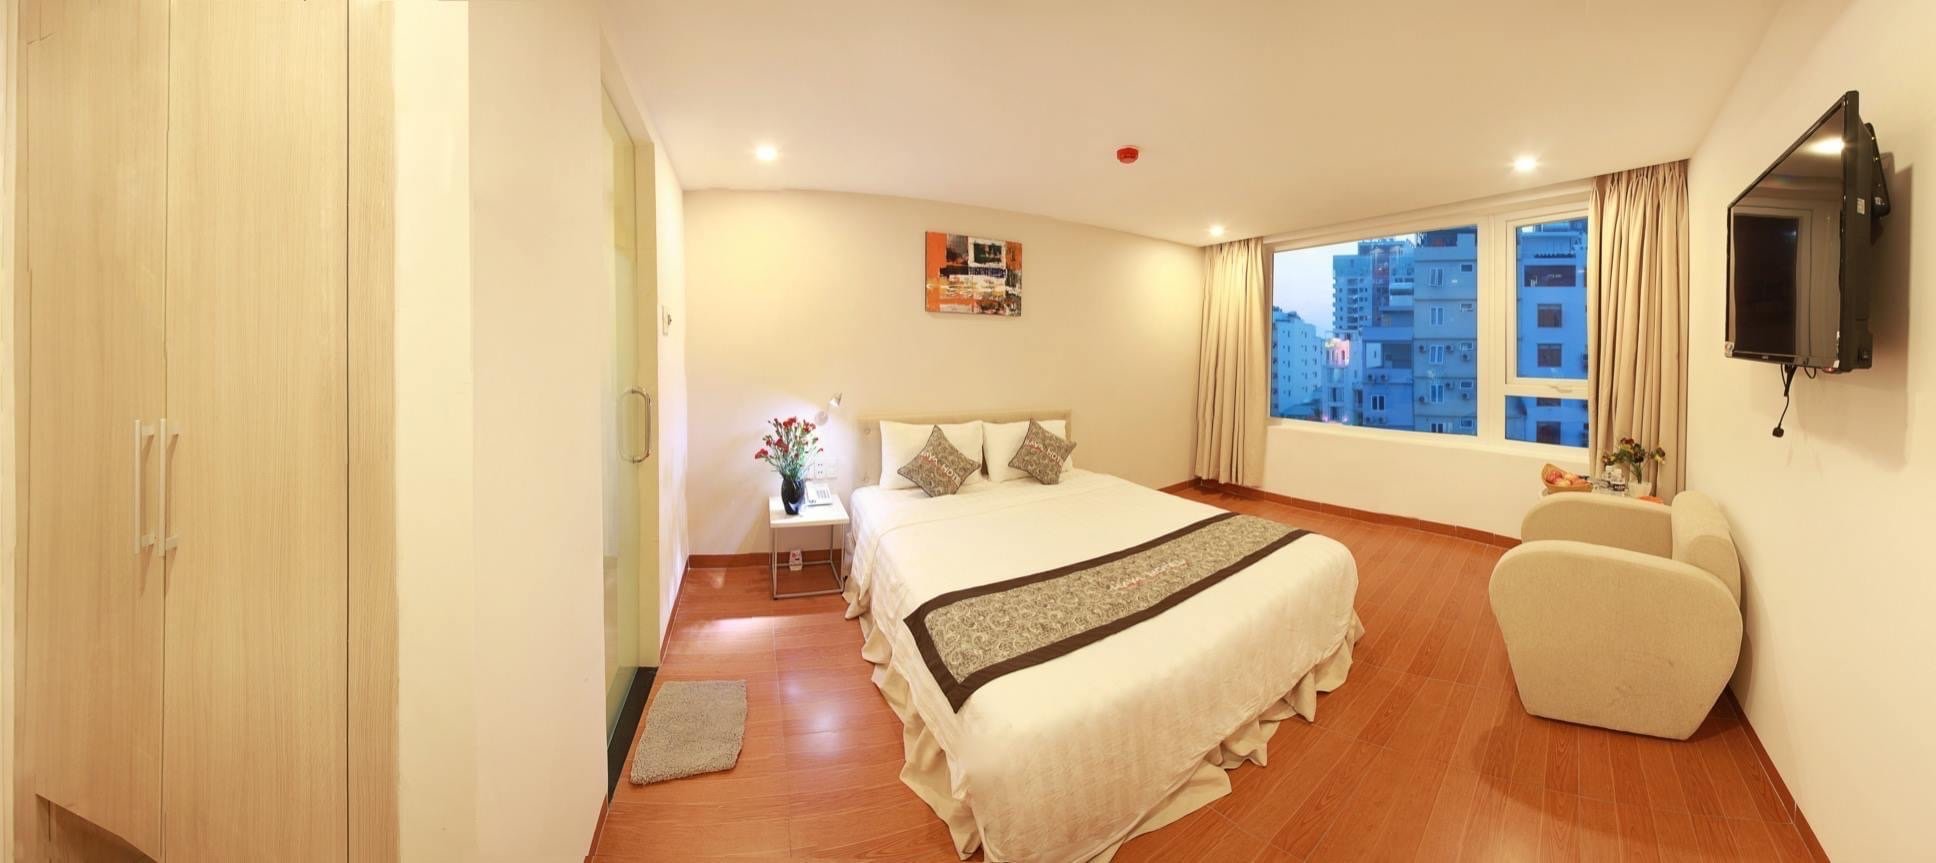 Cho thuê khách sạn 8 tầng Phan Liêm, 34 phòng.